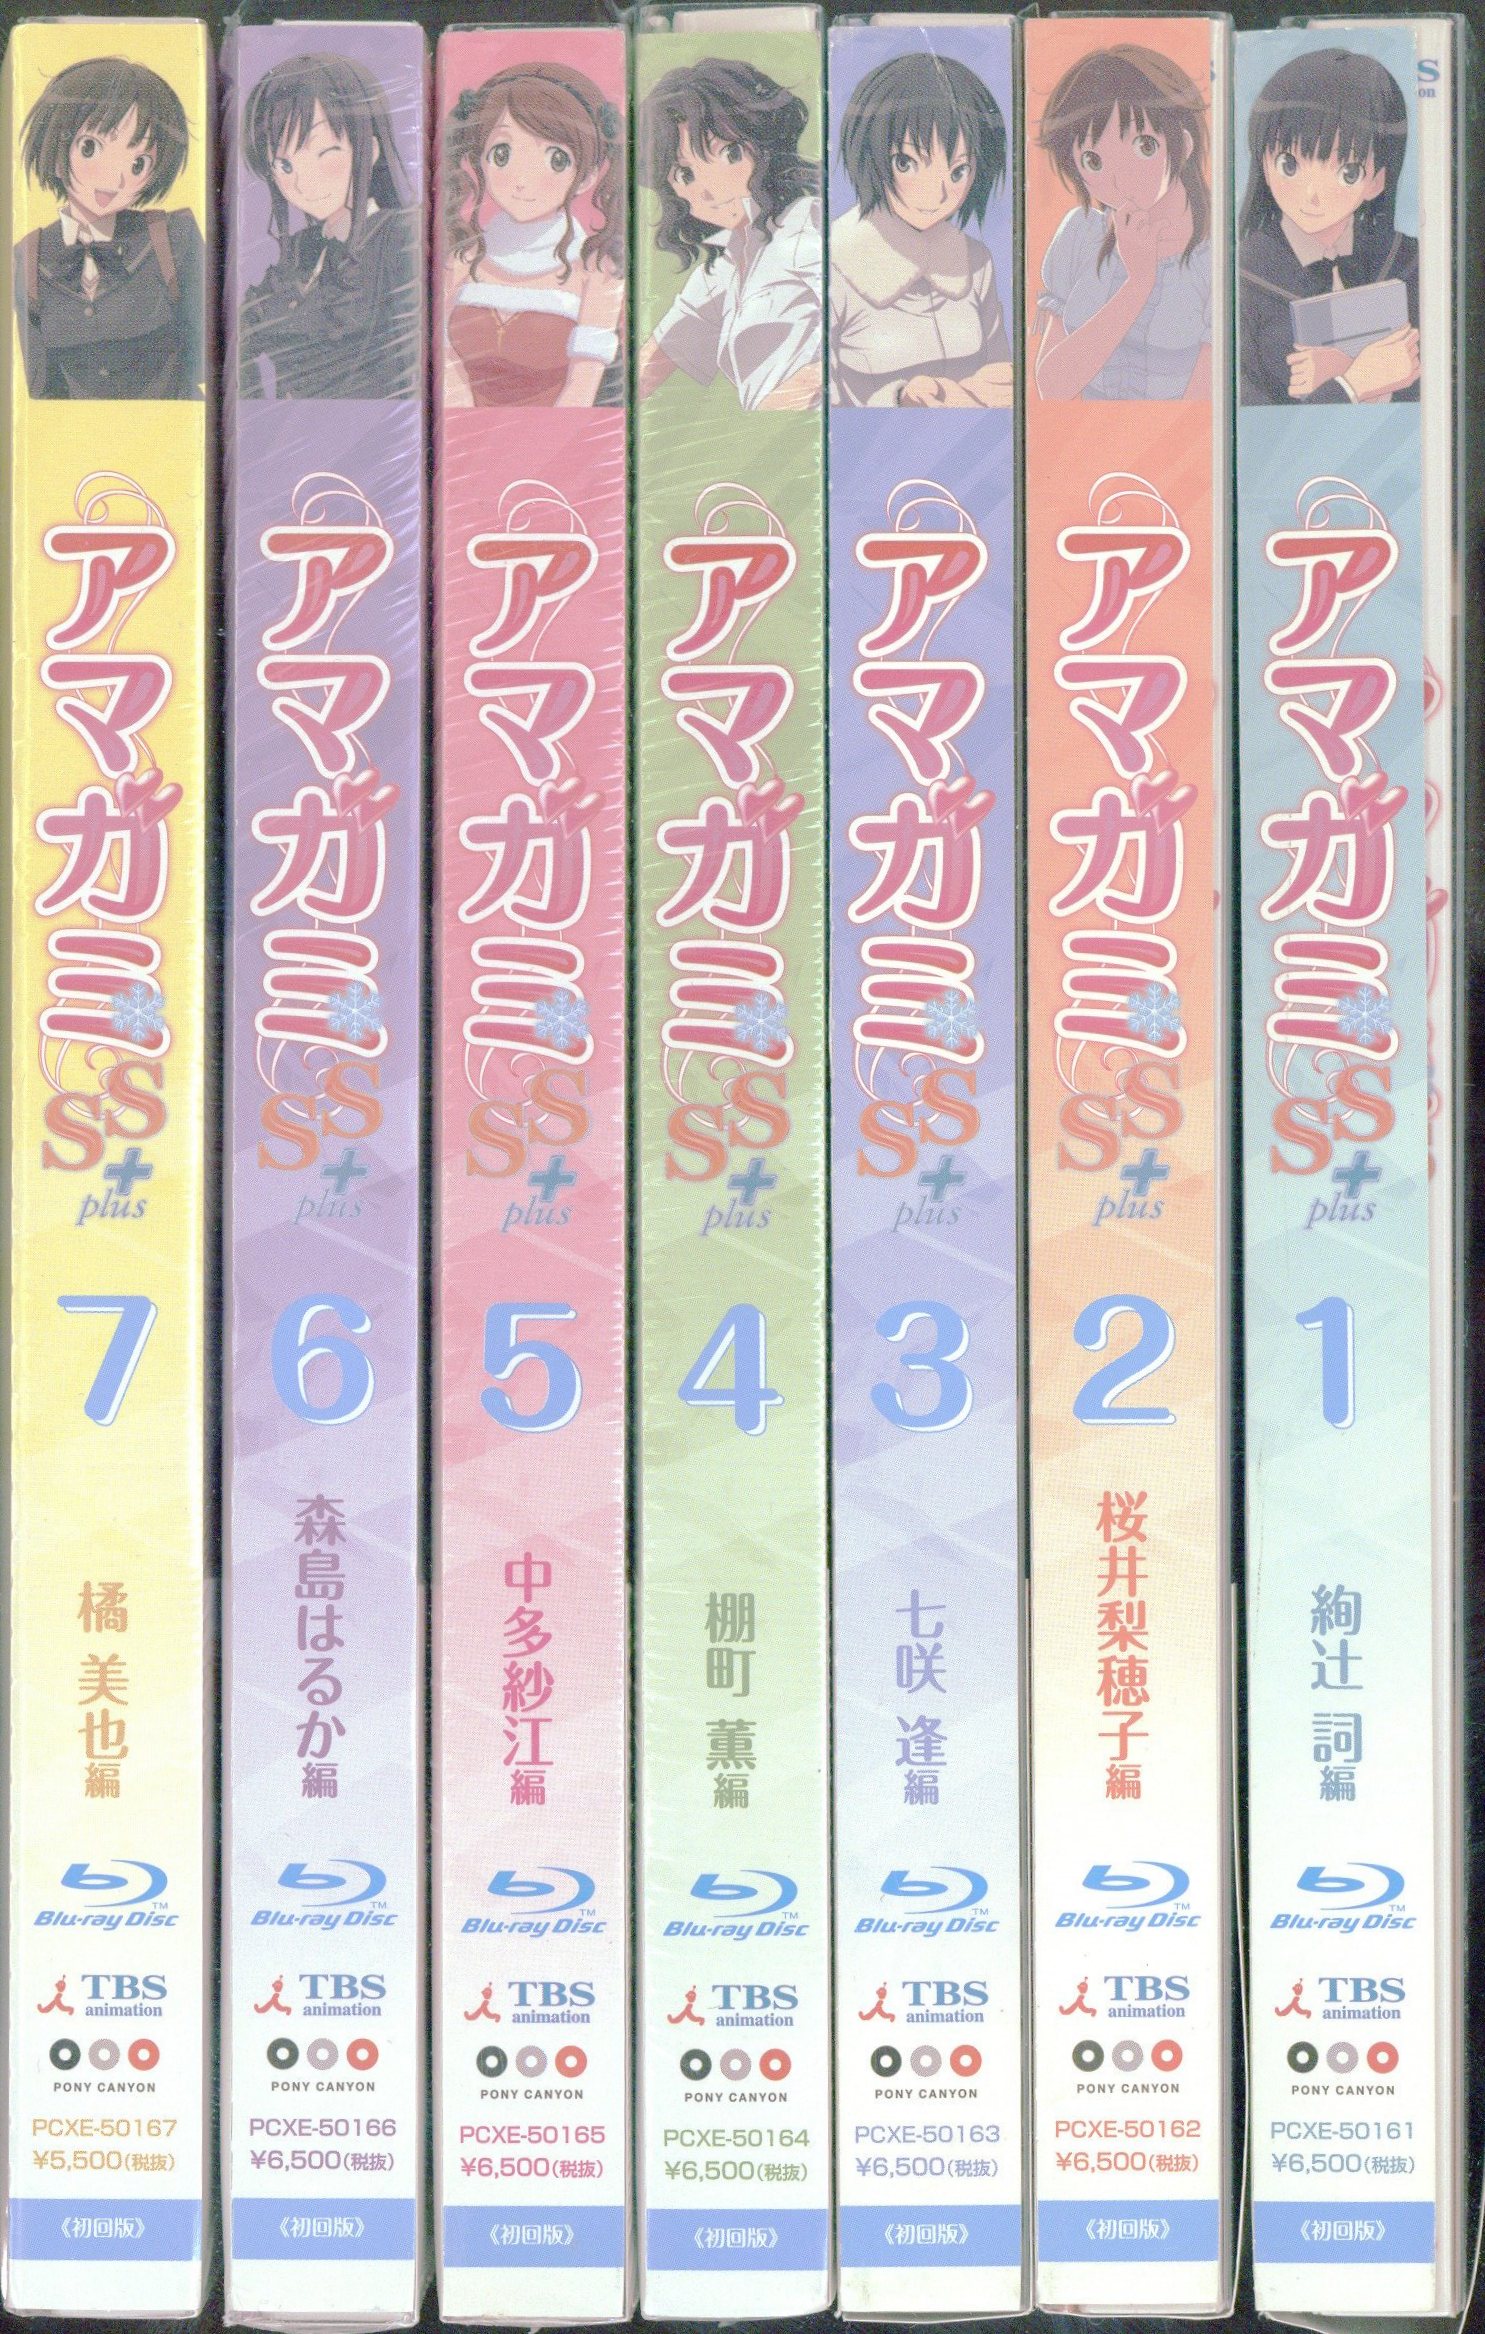 アマガミSS+ plus Blu-ray 1〜7巻セット - アニメ